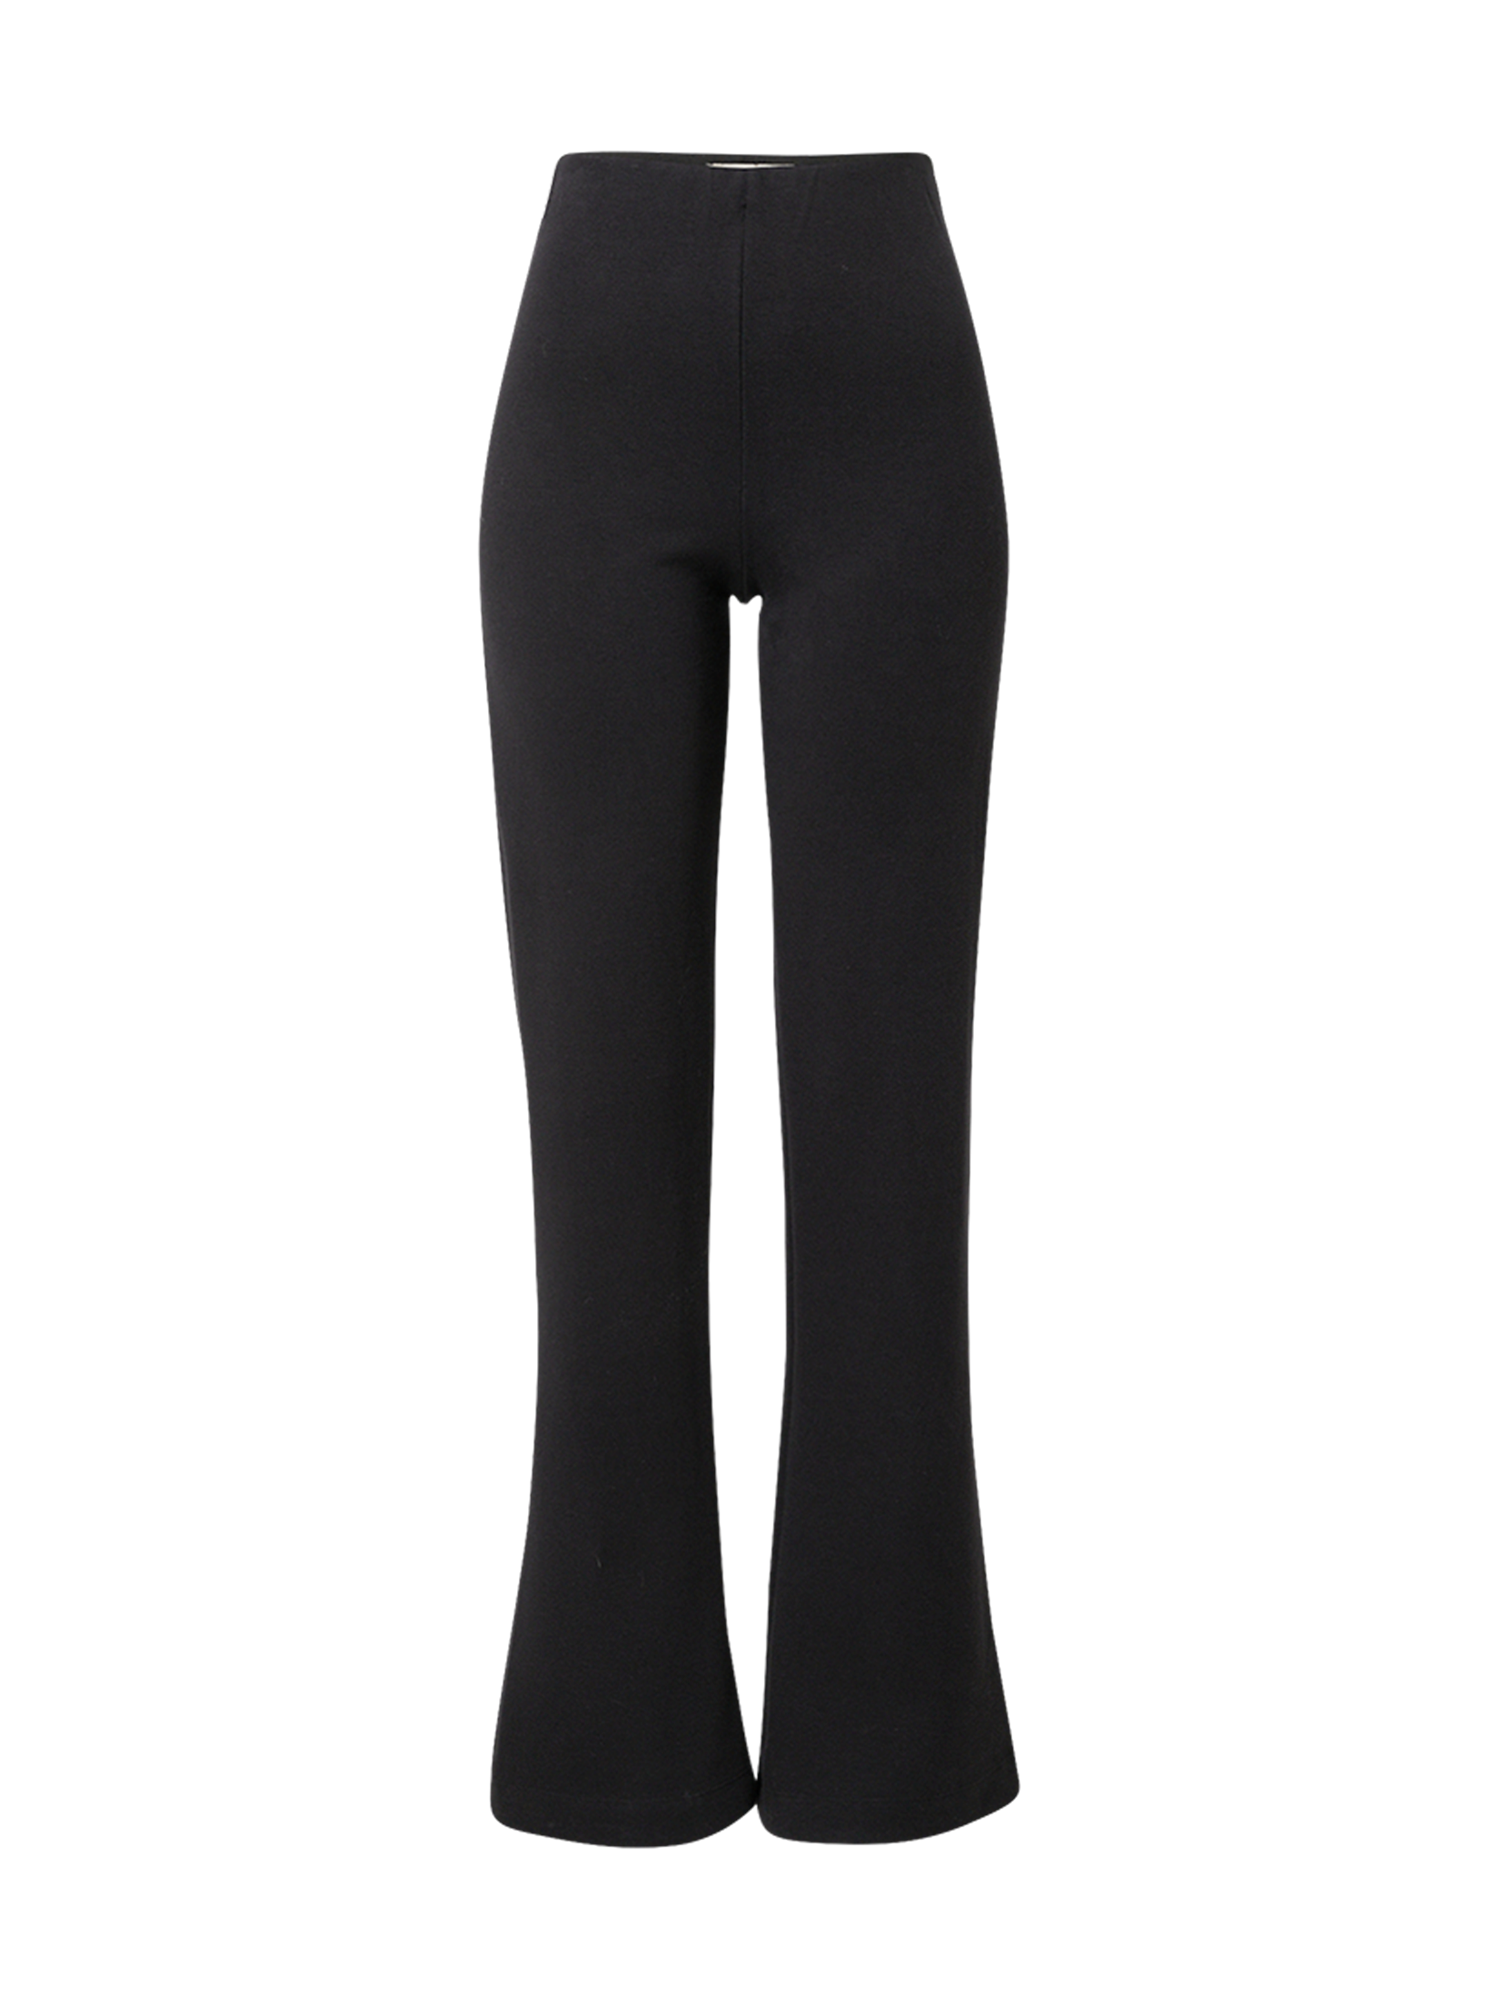 Bizance Paris Spodnie FELINA w kolorze Czarnym 